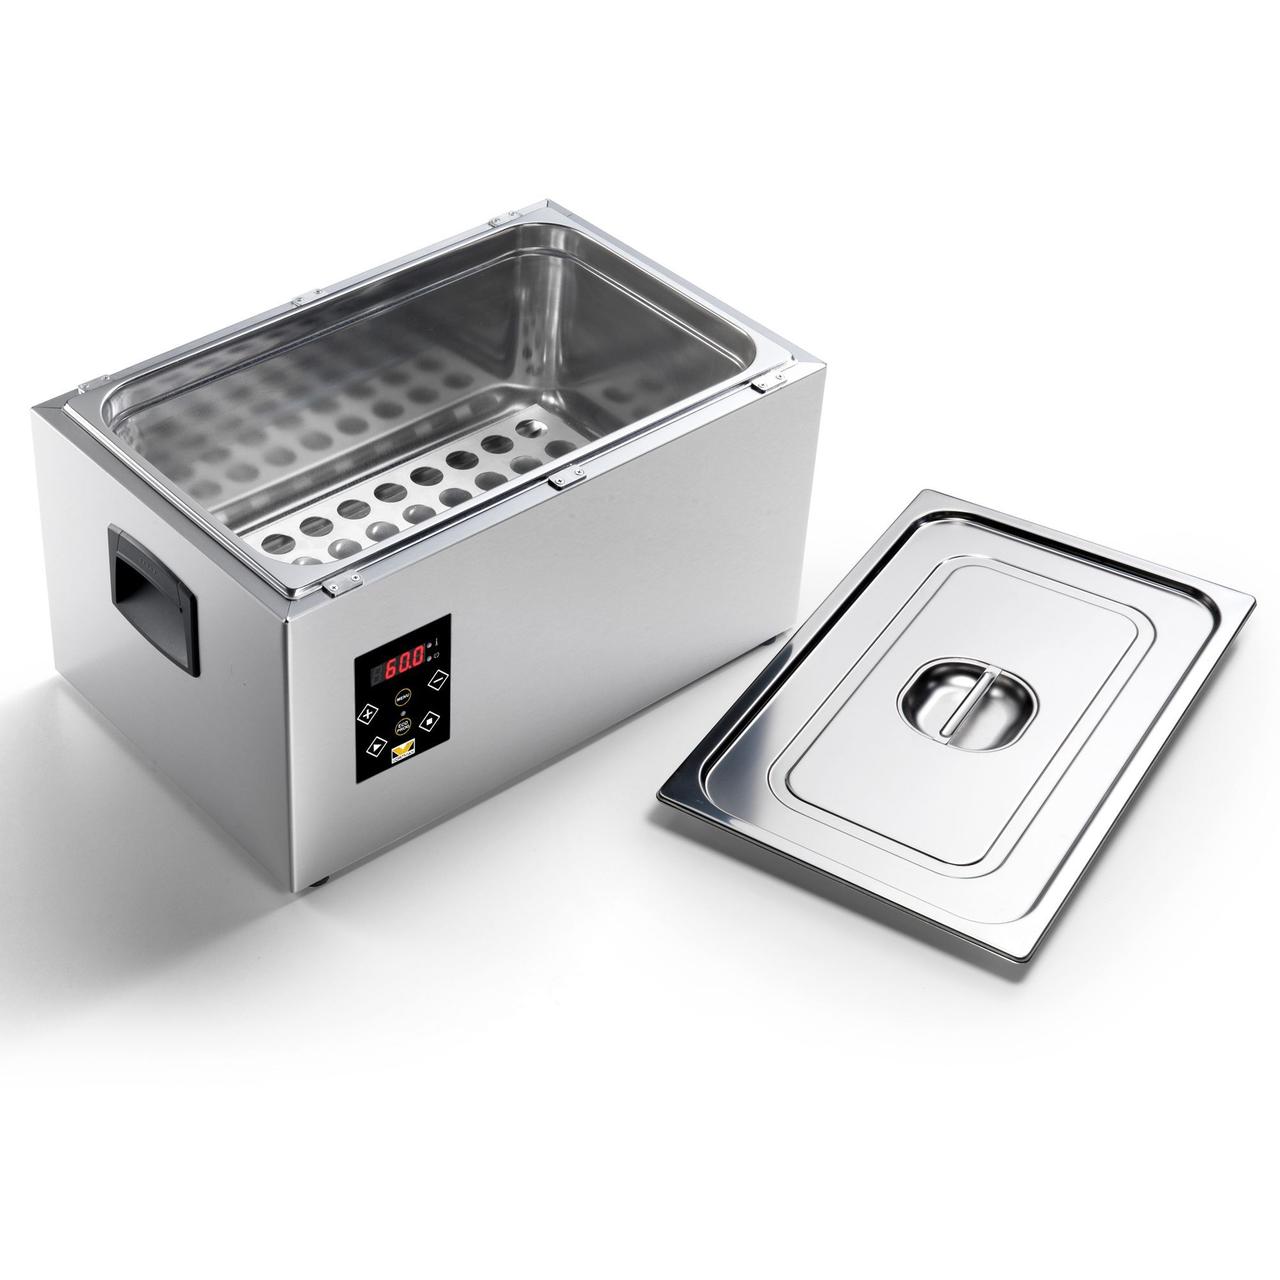 Аппарат для приготовления блюд при низких температурах (Су-вид) VS 1/1 с крышкой